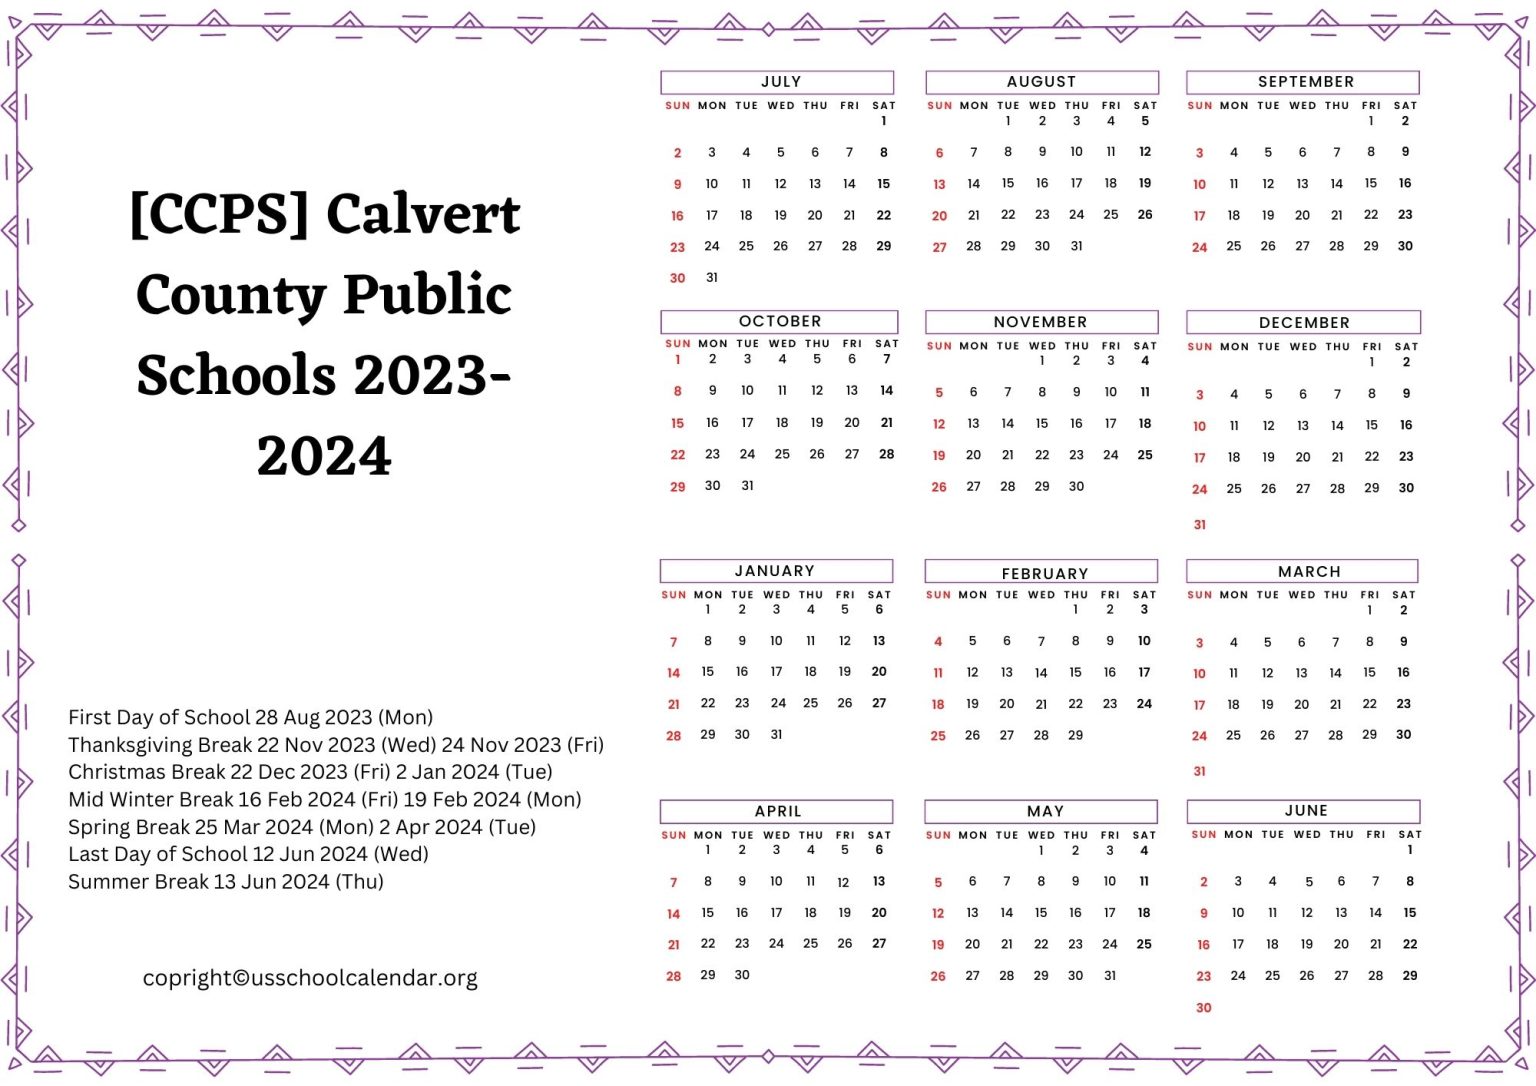 CCPS Calvert County Public Schools Calendar for 2023 2024